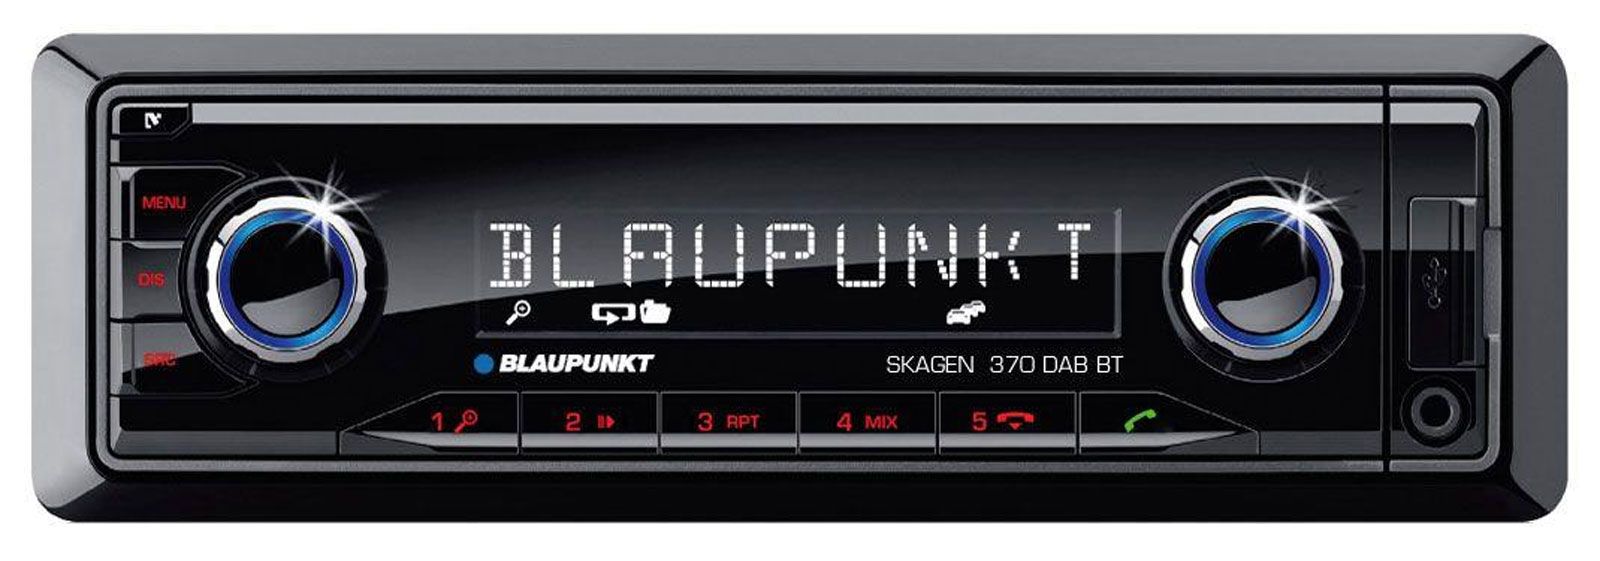 Blaupunkt Skagen 370 DAB BT - MP3-Autoradio mit Bluetooth / DAB / USB / SD / iPod / AUX-IN